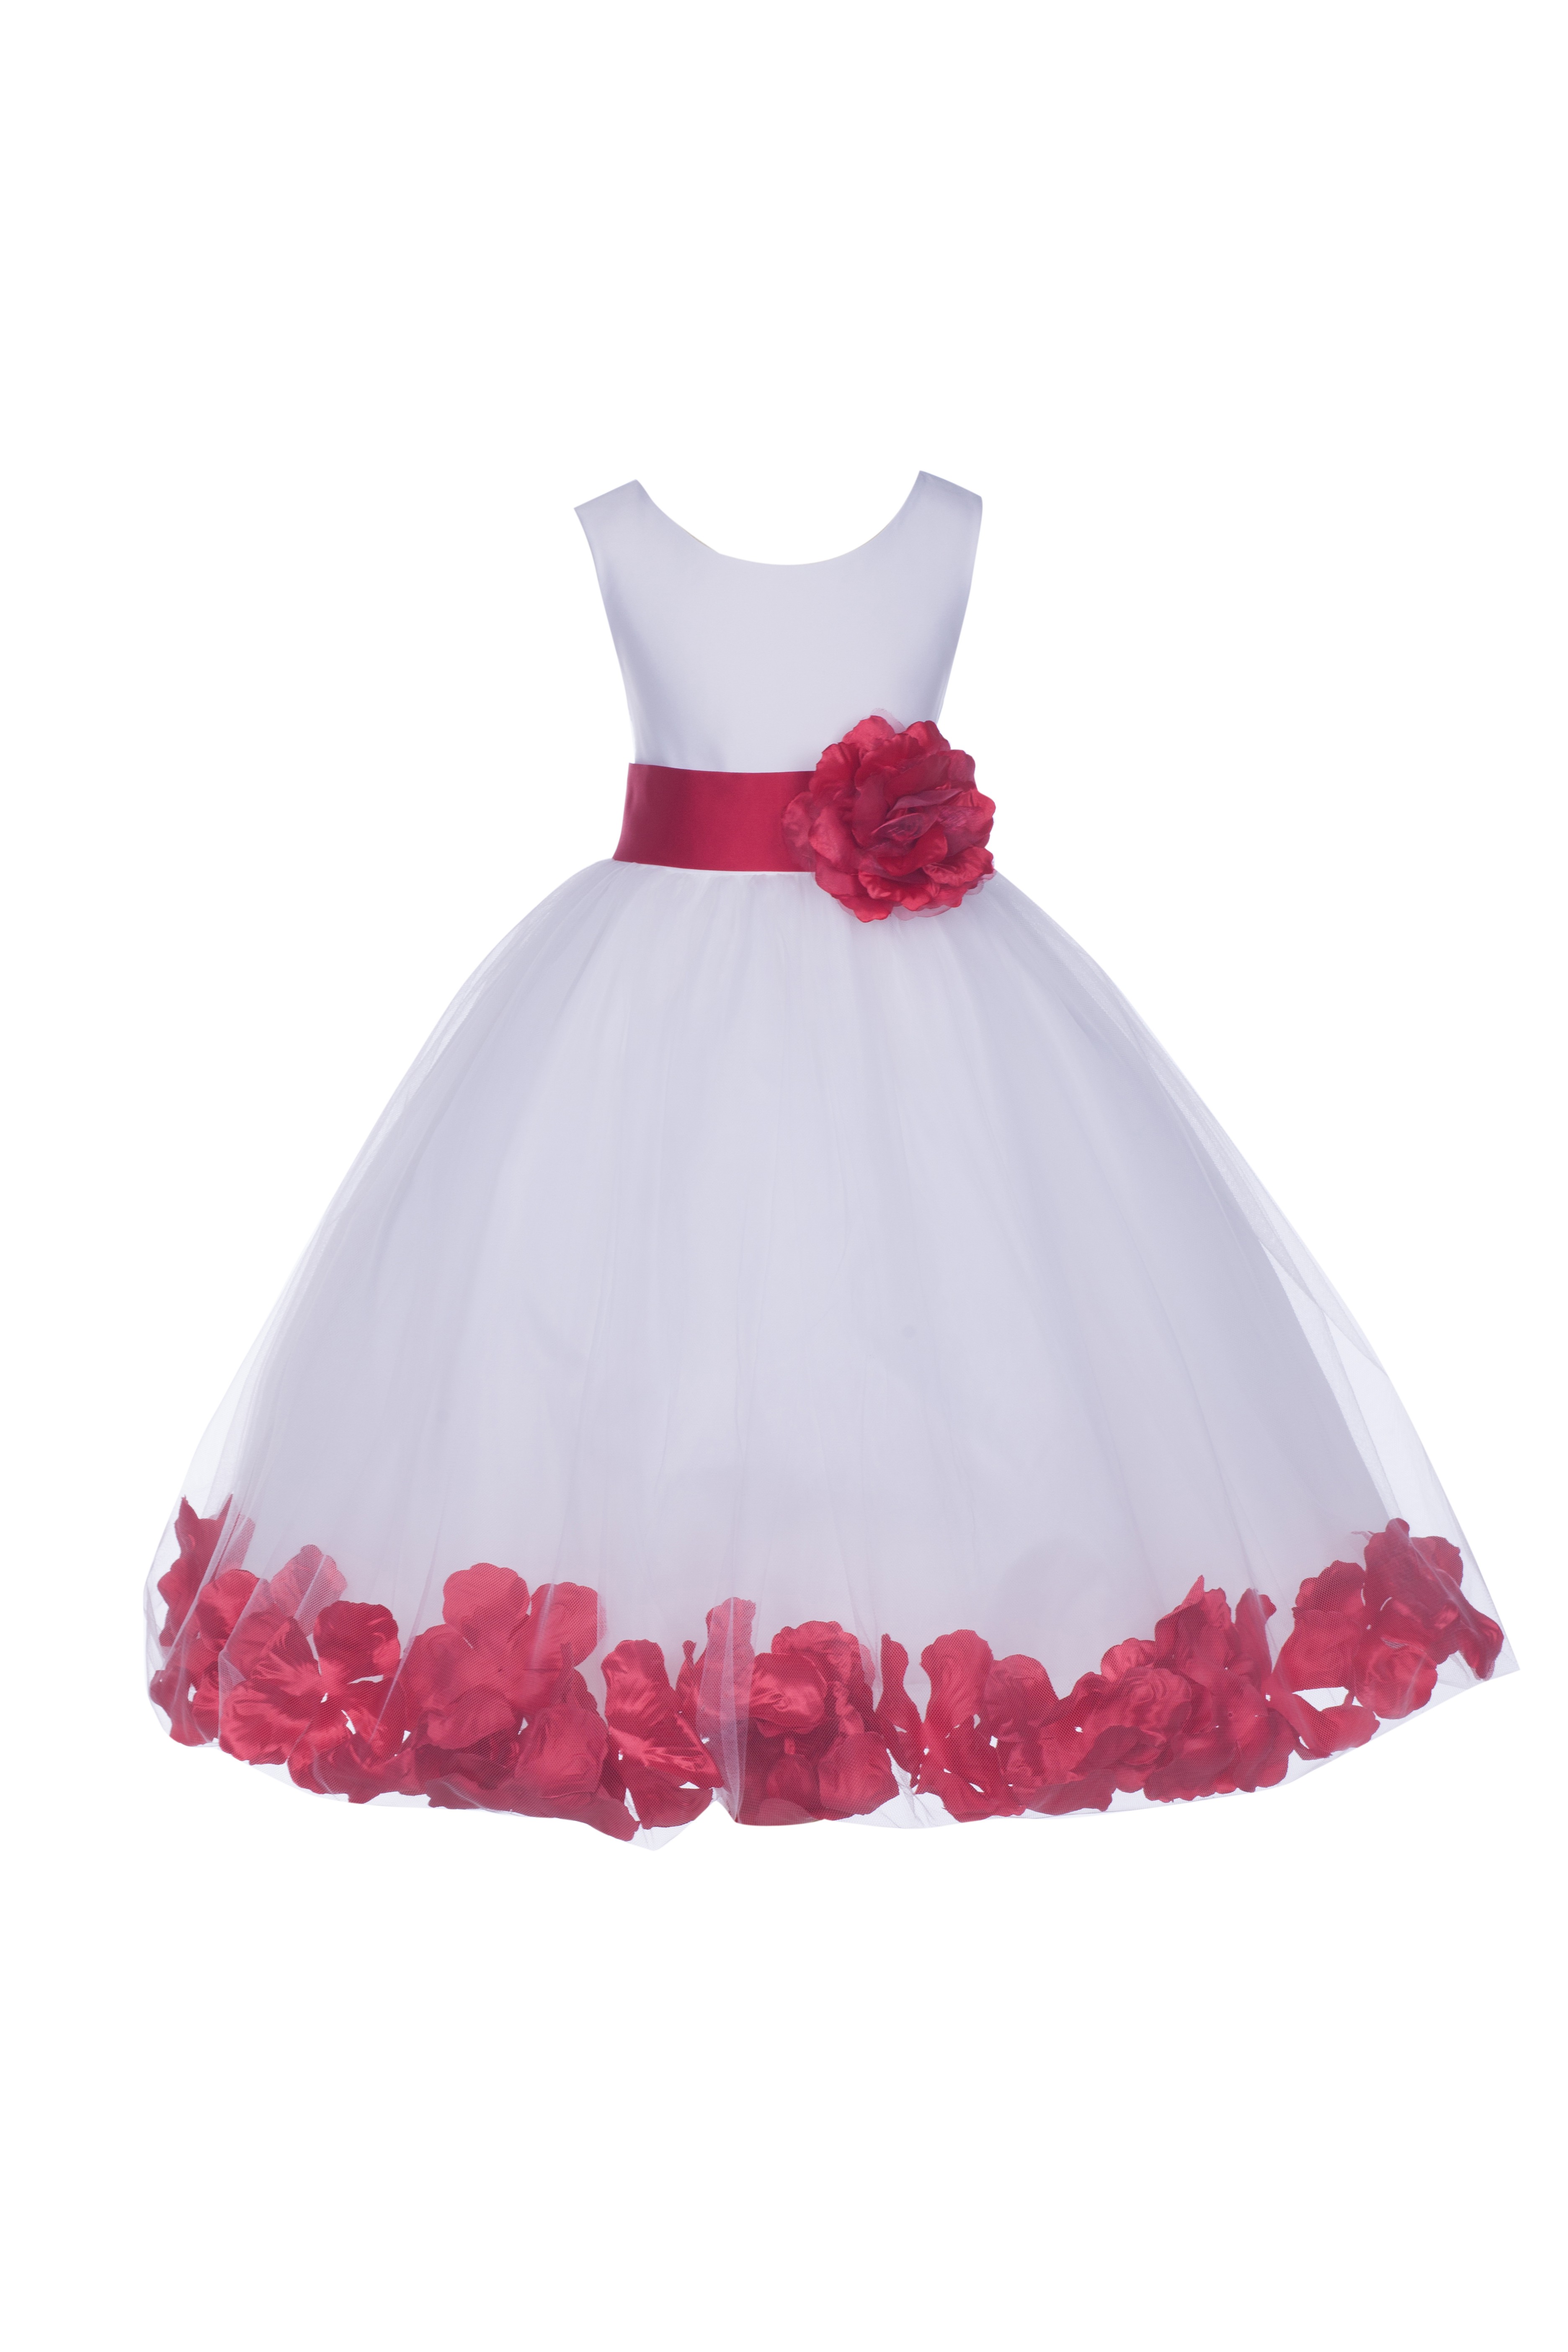 White/Cherry Tulle Rose Petals Flower Girl Dress Wedding 302S